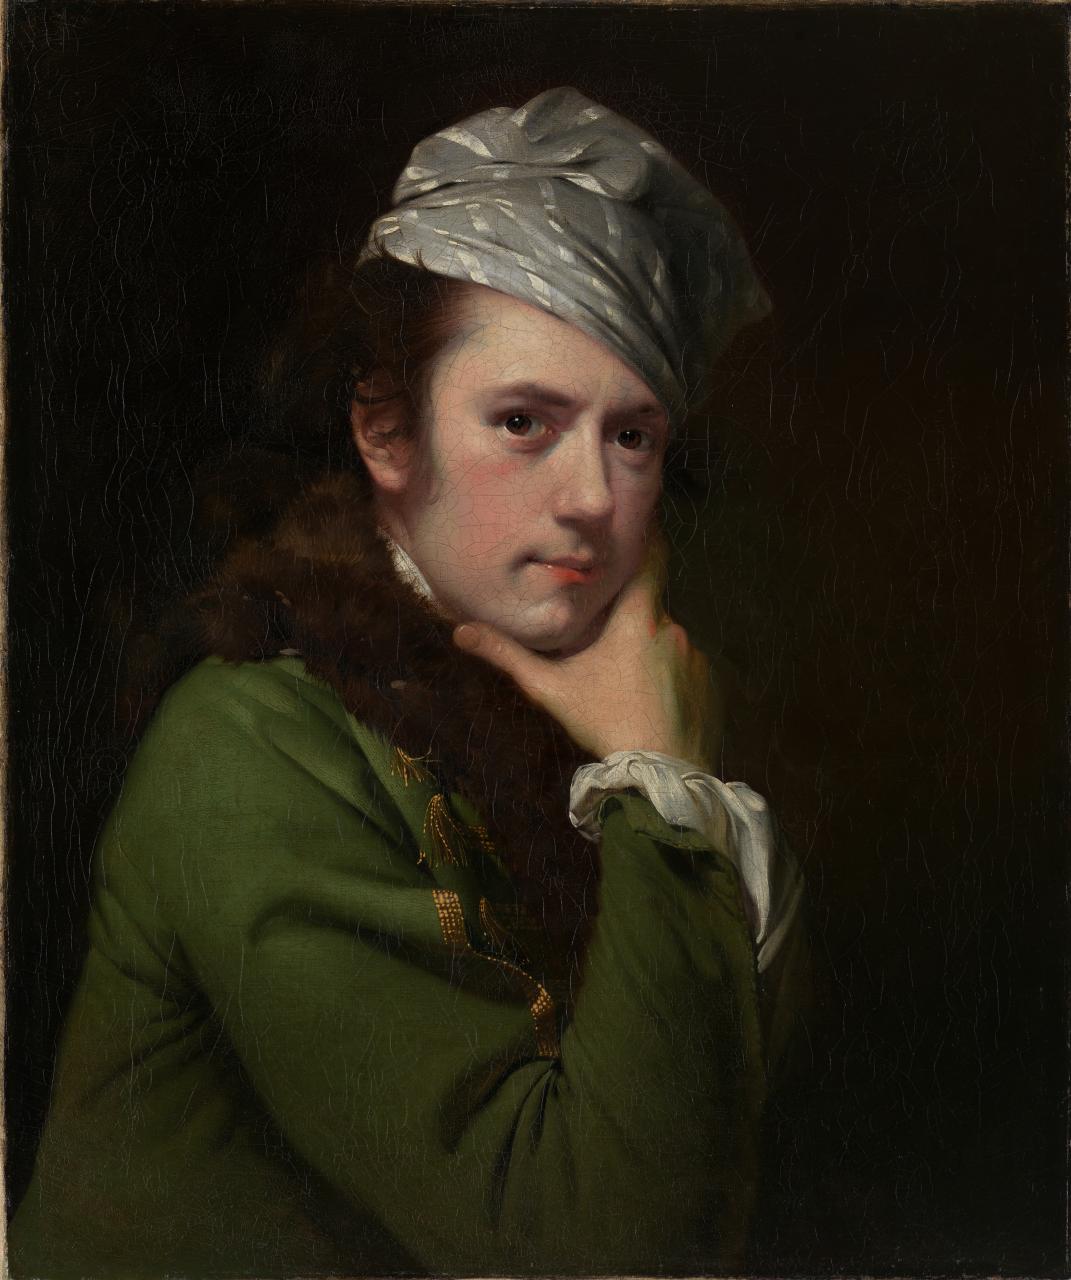 Joseph Wright of Derby - September 3, 1734 - August 29, 1797